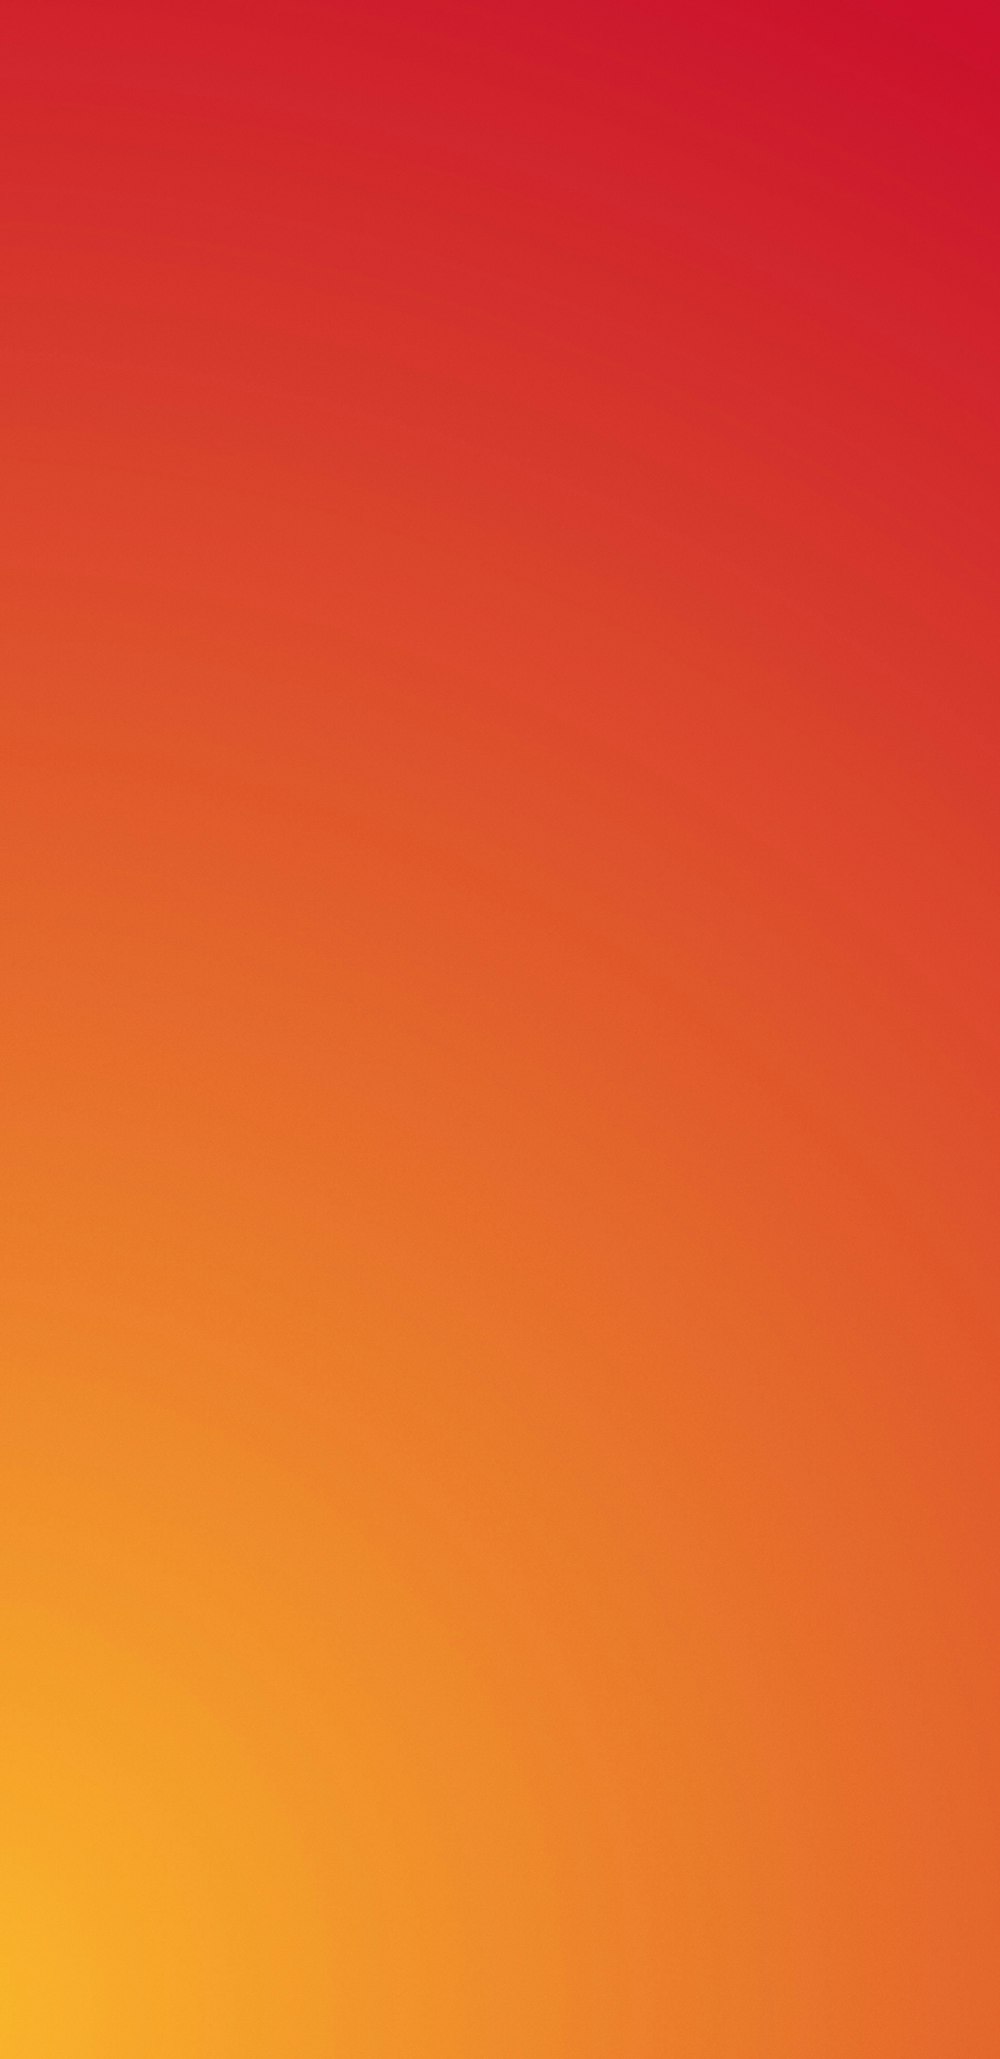 Làm mới không gian của bạn với chuyển đổi màu từ cam đậm đến đỏ máu gradient. Với sự kết hợp độc đáo của sắc cam và đỏ, bạn sẽ có giao diện tuyệt đẹp và thú vị để trưng bày cho website của mình. Hãy theo đuổi sự khác biệt và sáng tạo.